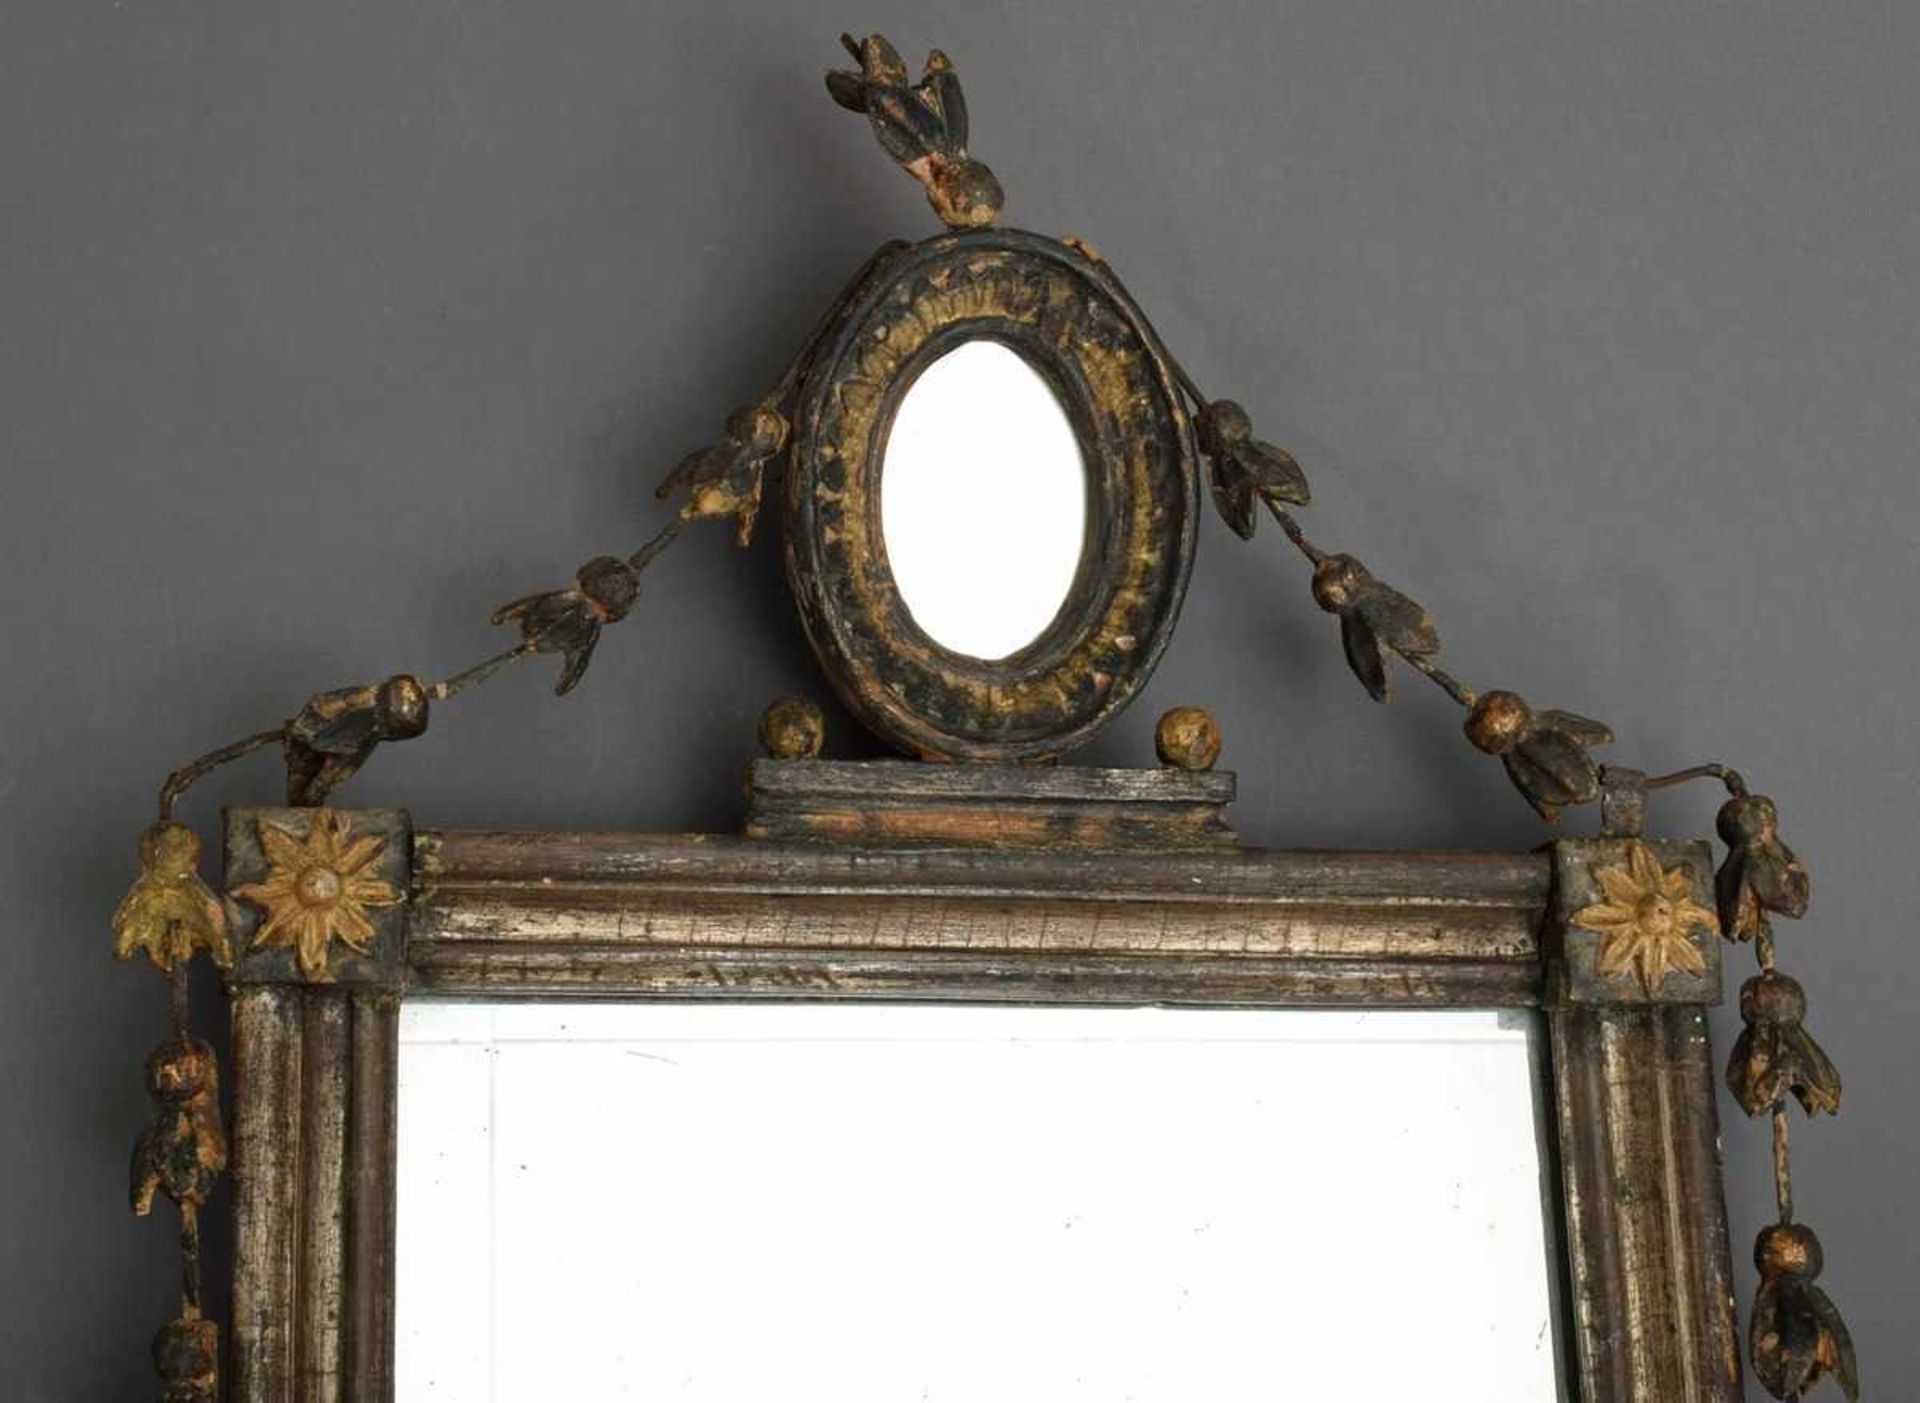 Klassizistischer Spiegel mit zierlicher Rankendekoration und aufgesetztem Spiegel, Ende 18.Jh., - Bild 2 aus 4